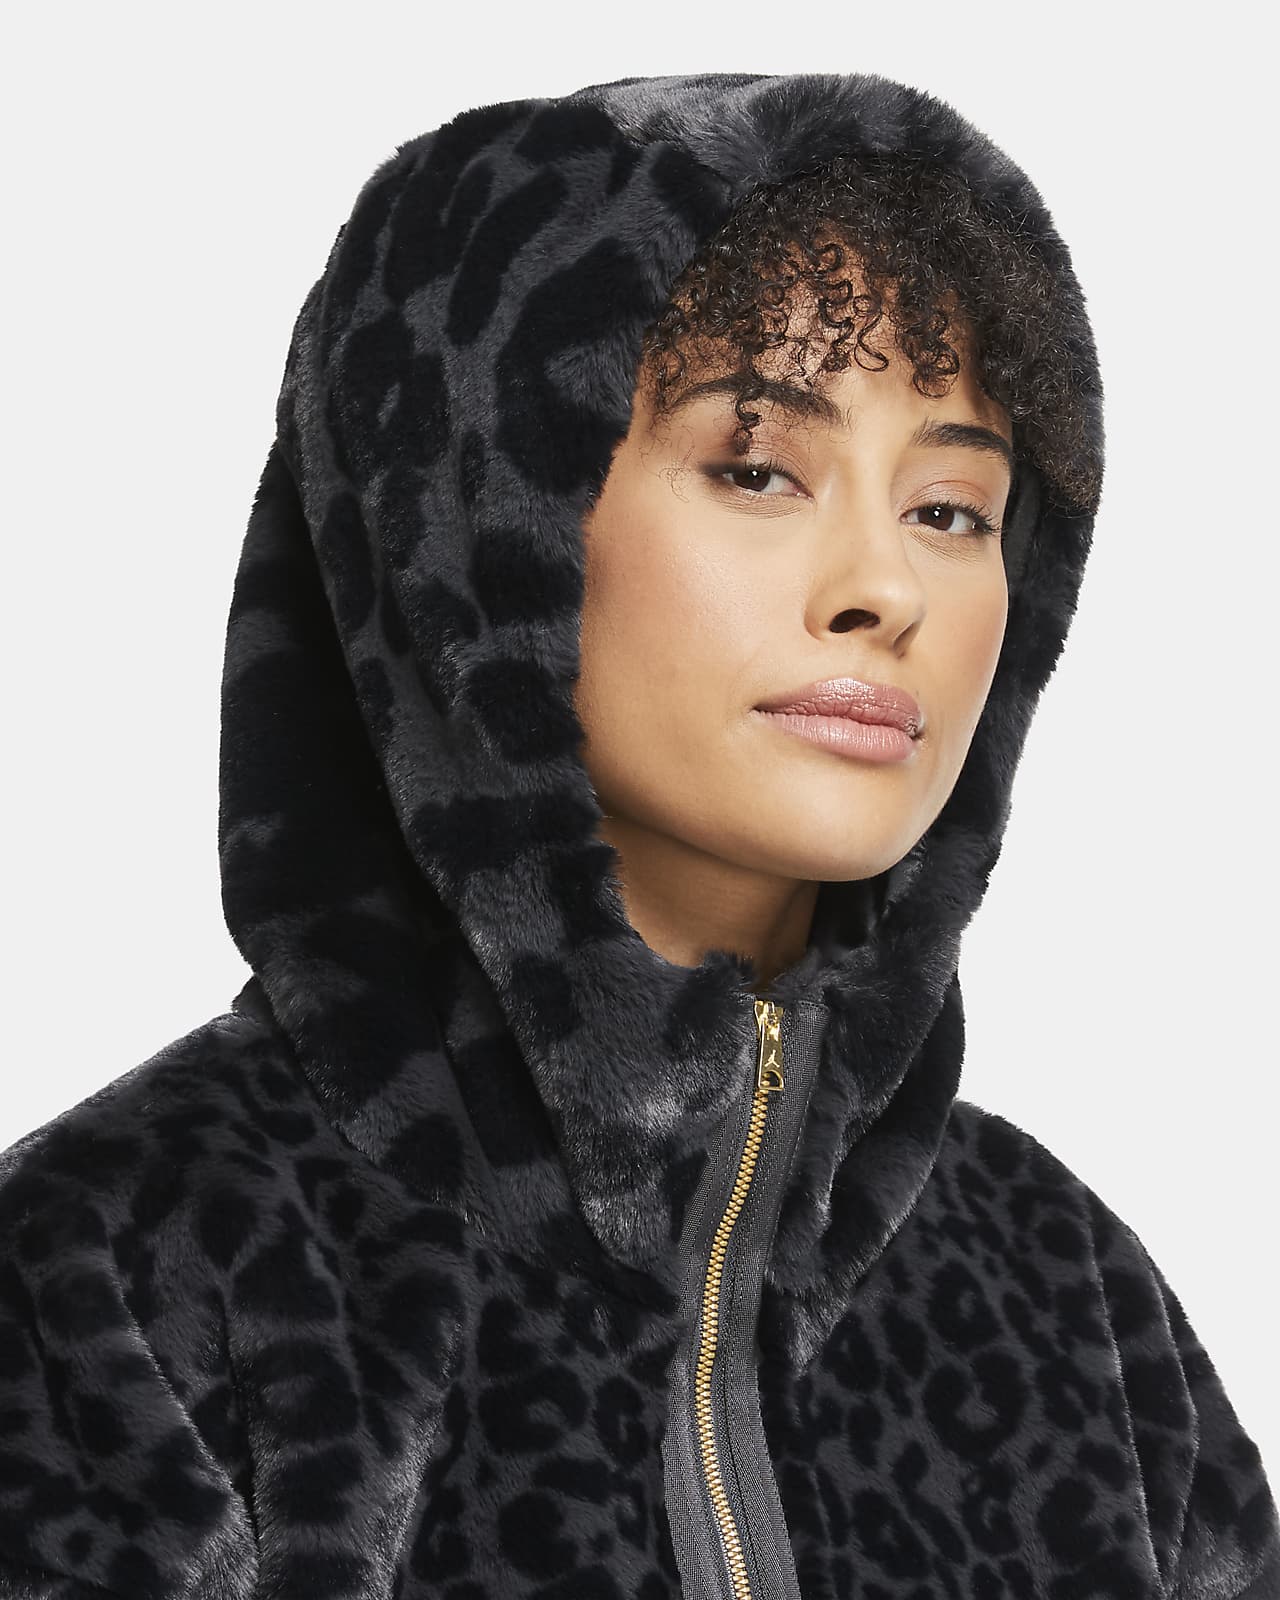 nike cheetah print hoodie